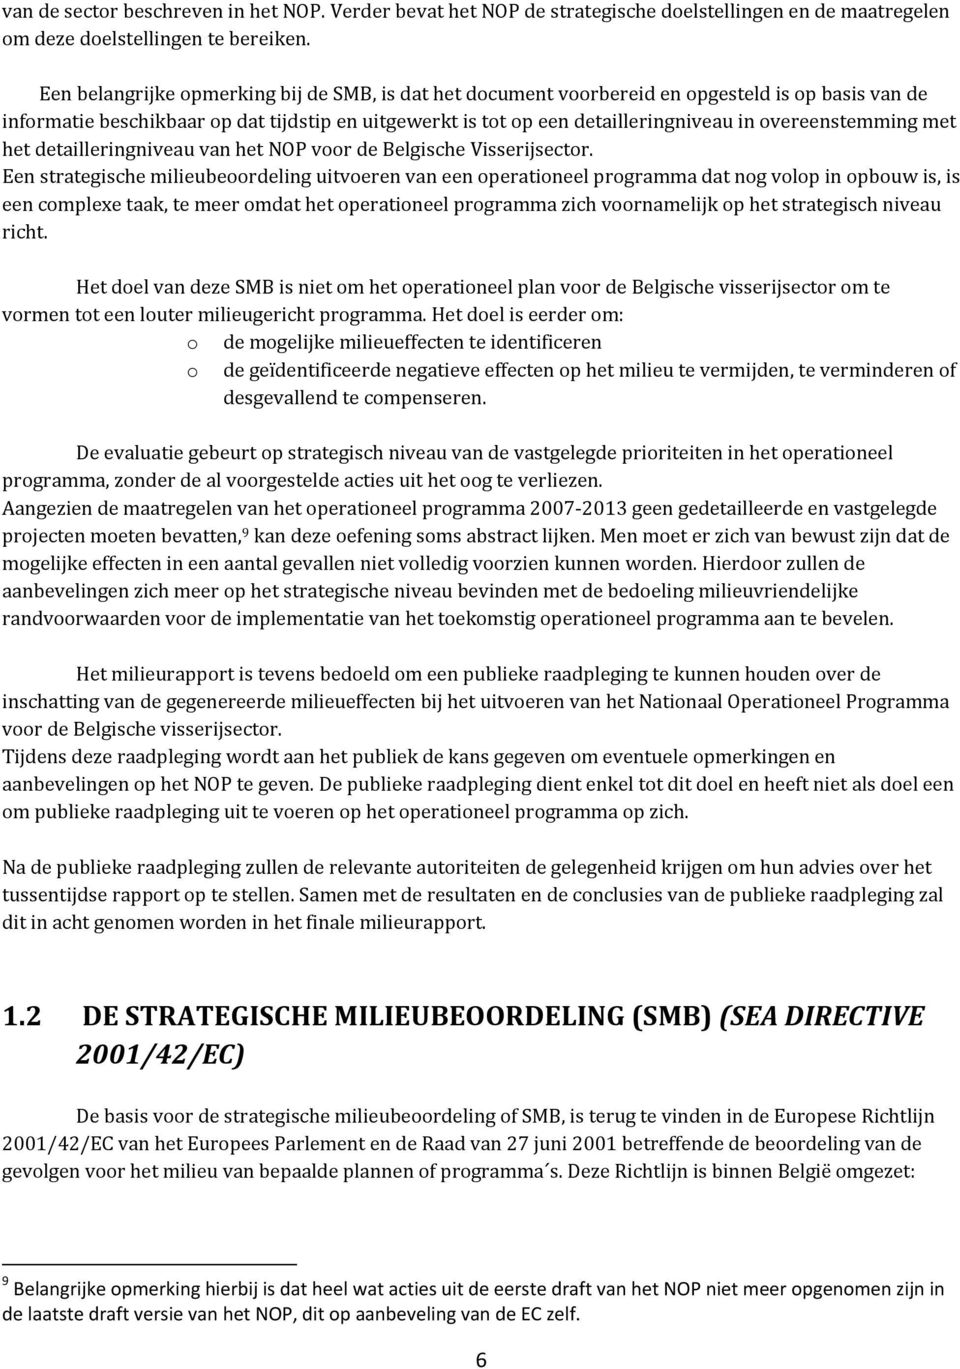 overeenstemming met het detailleringniveau van het NOP voor de Belgische Visserijsector.